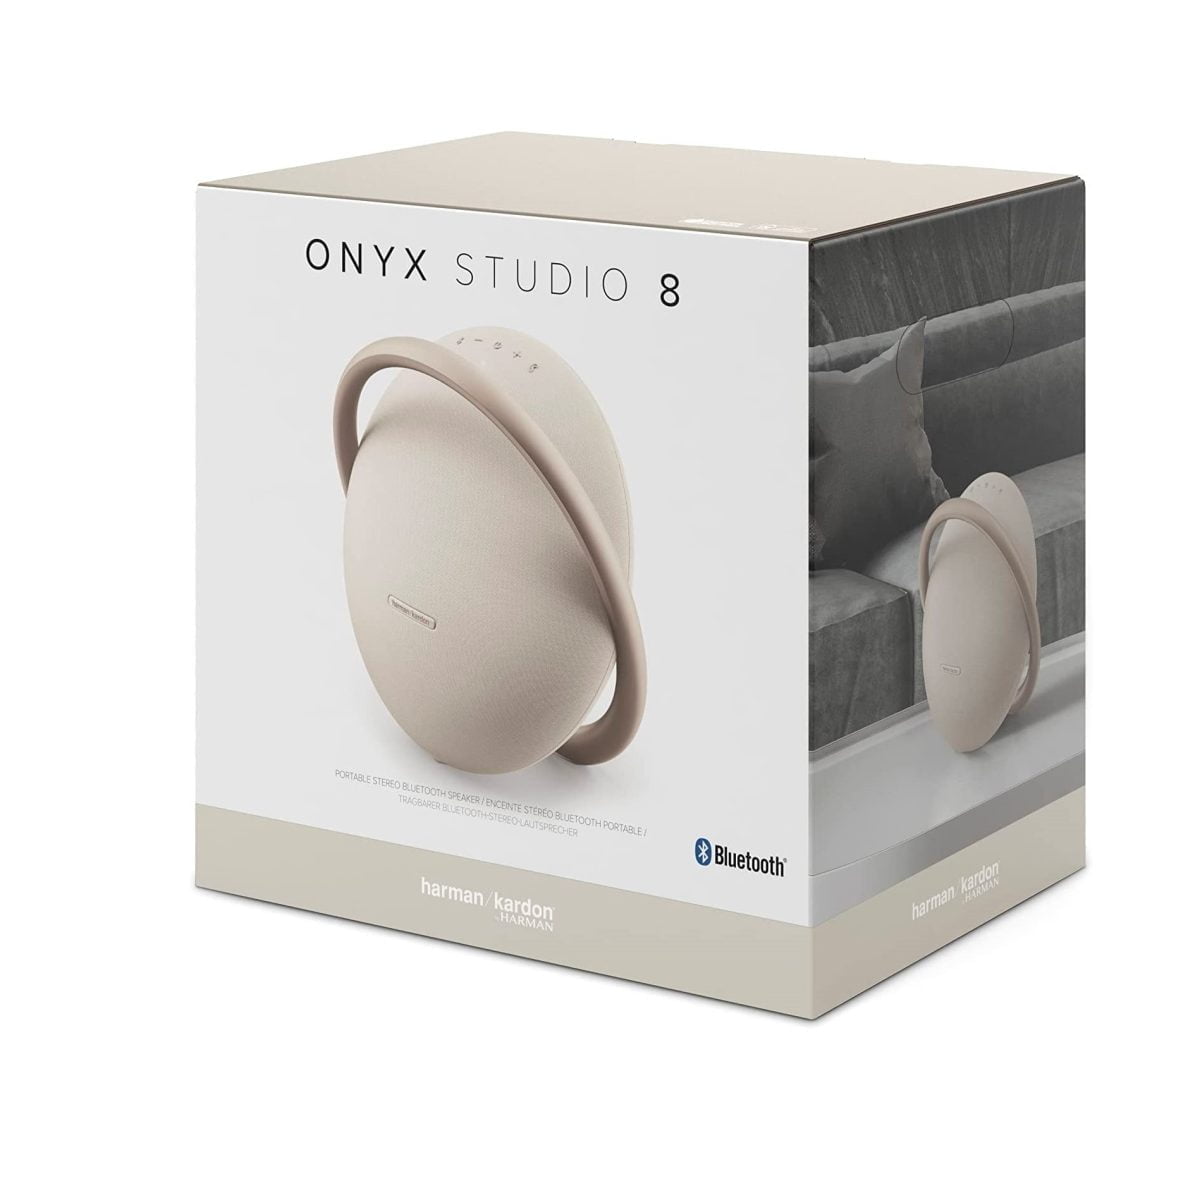 Harman Kardon Onyx Studio 8 Bluetooth Speake